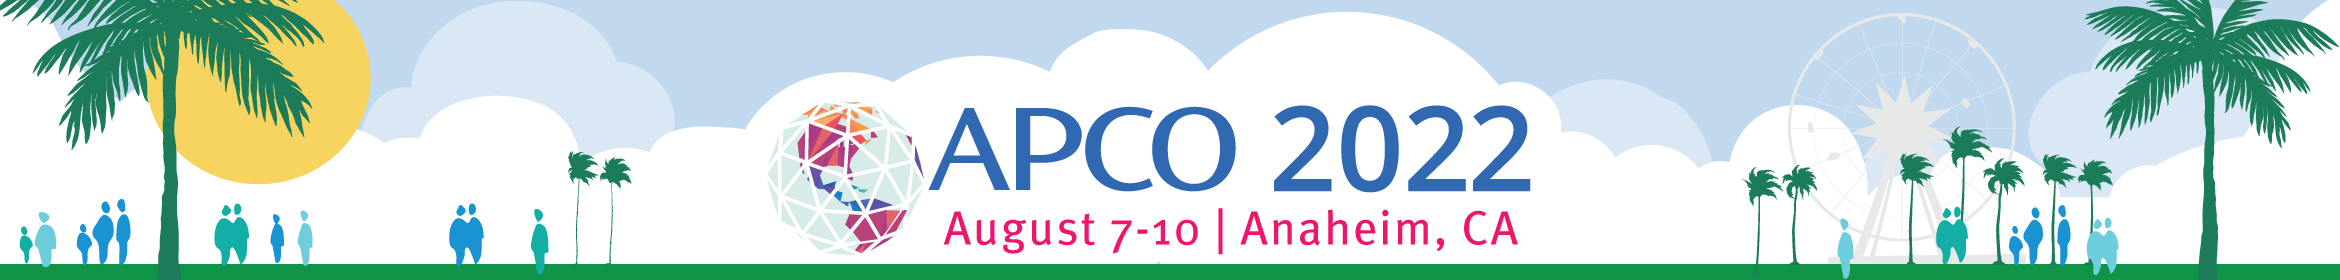 APCO 2022 Main banner